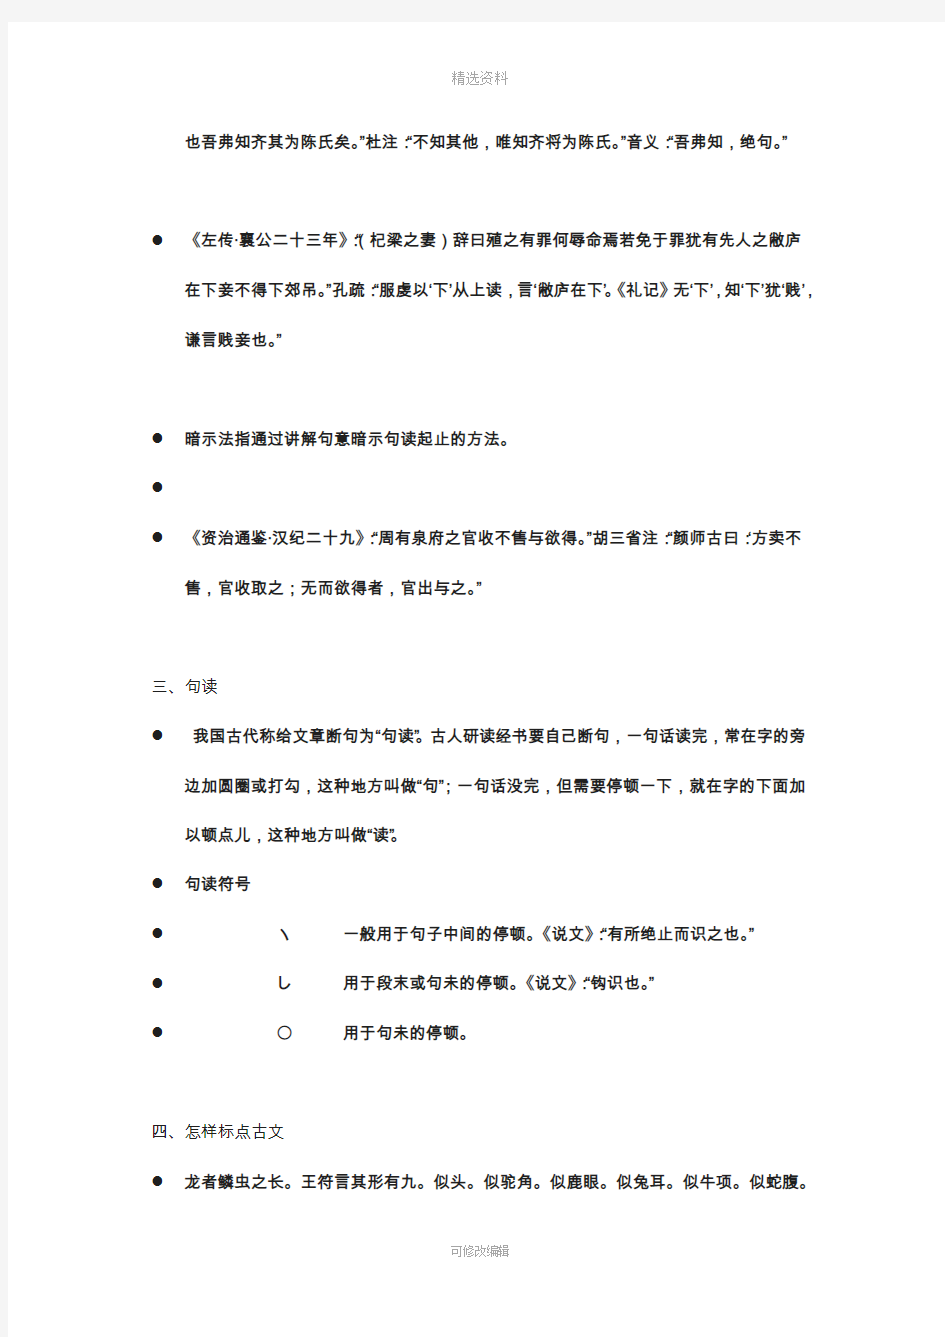 十九古代汉语古书的标点问题